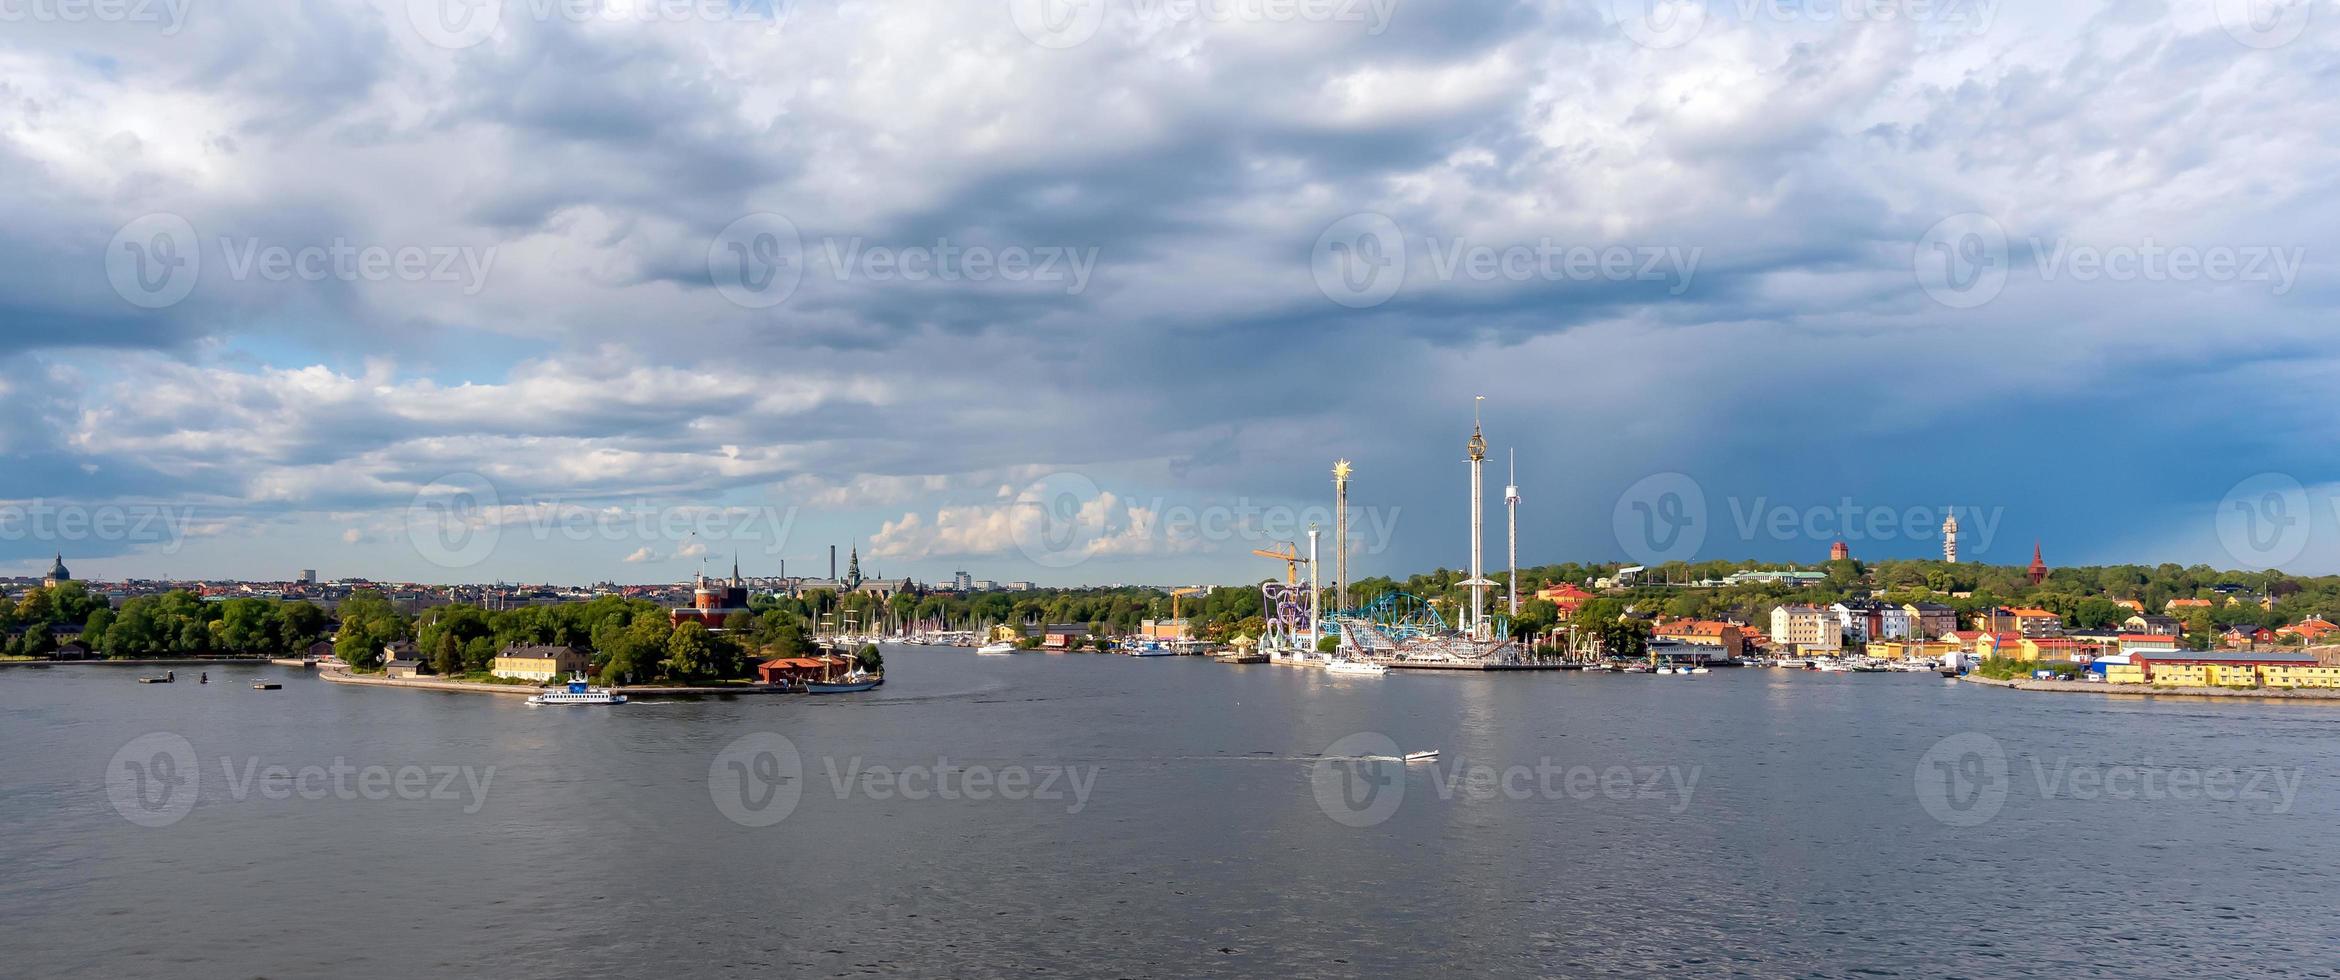 Vista della città di Stoccolma sul porto marittimo nella stagione estiva a Stoccolma, Svezia foto